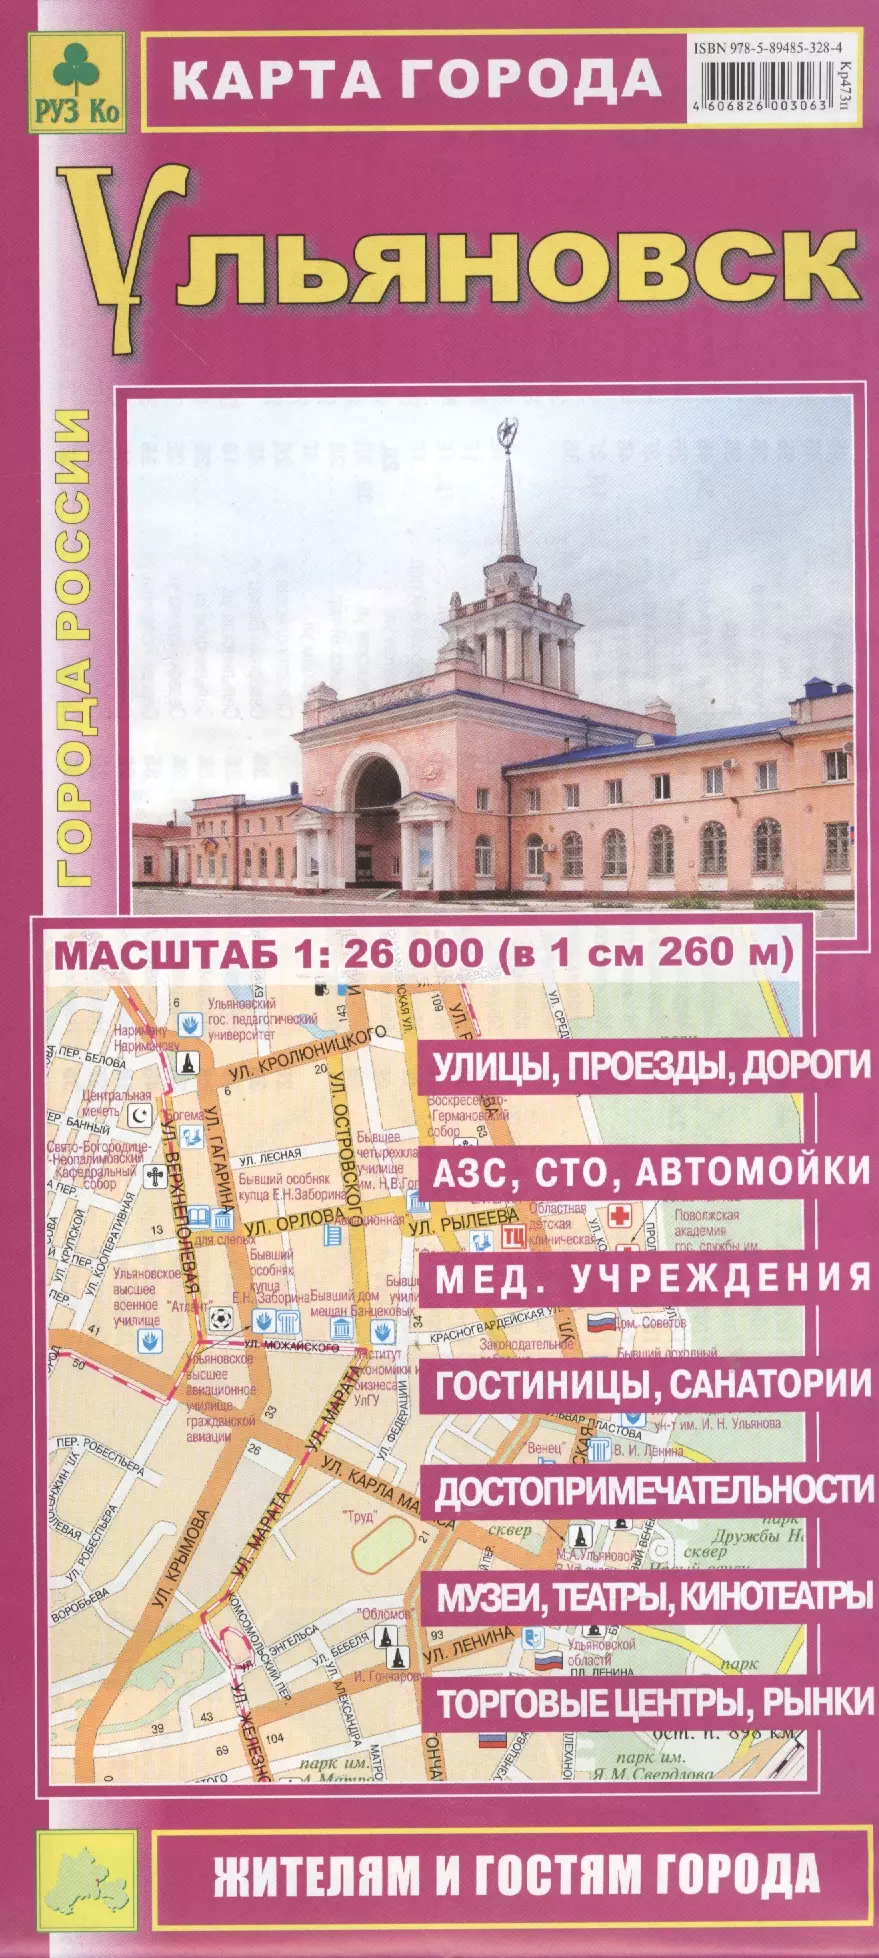 карта города оренбург 1 20 тыс м раскл кр467п Карта города Ульяновск (1:26 тыс.) (Кр473п) (м) (раскл)